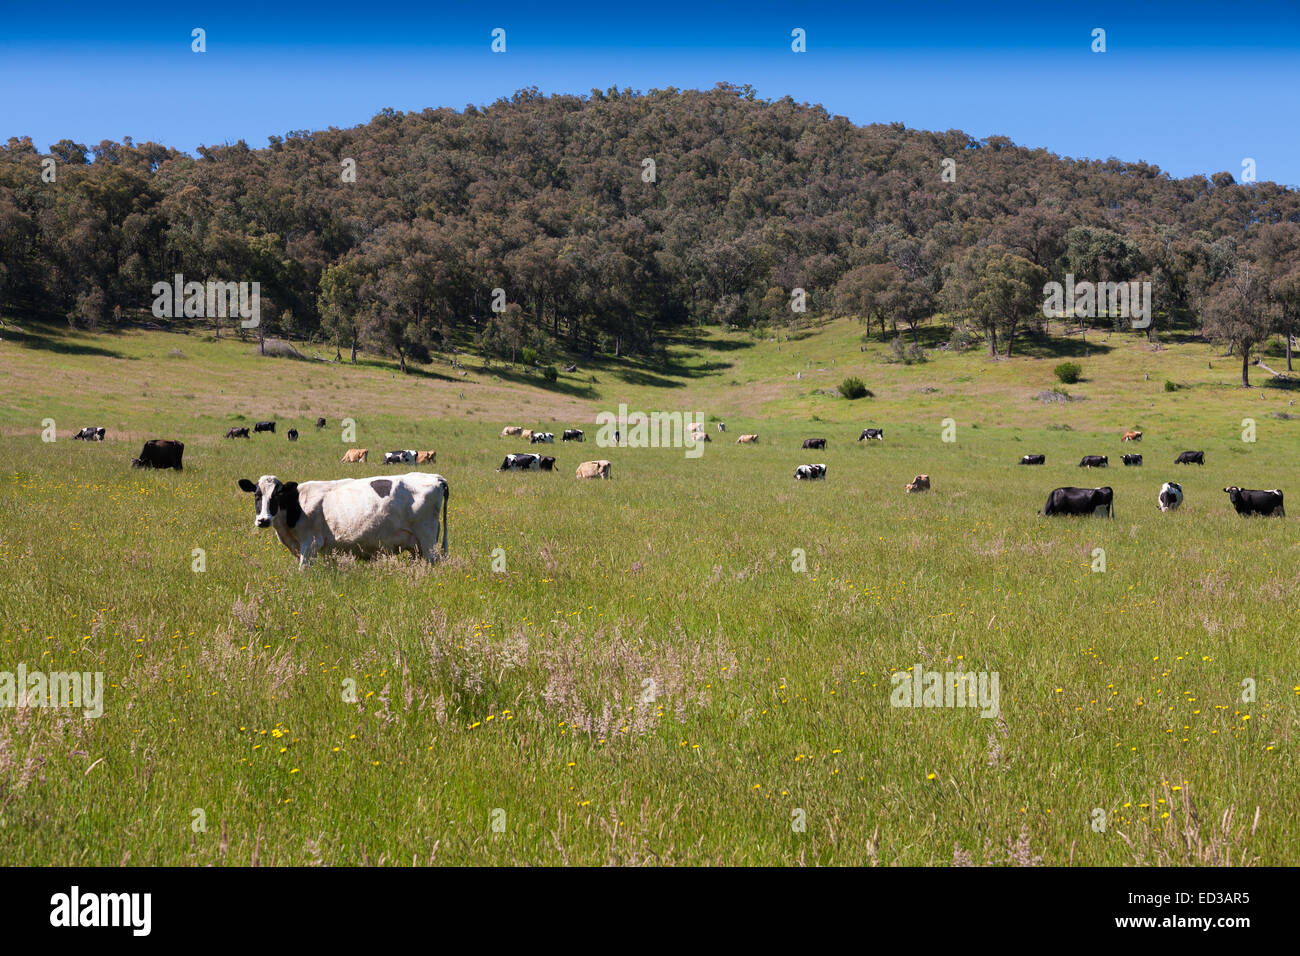 Les vaches qui paissent dans les herbes hautes montagnes de neige supérieure Towong NSW Australie Banque D'Images